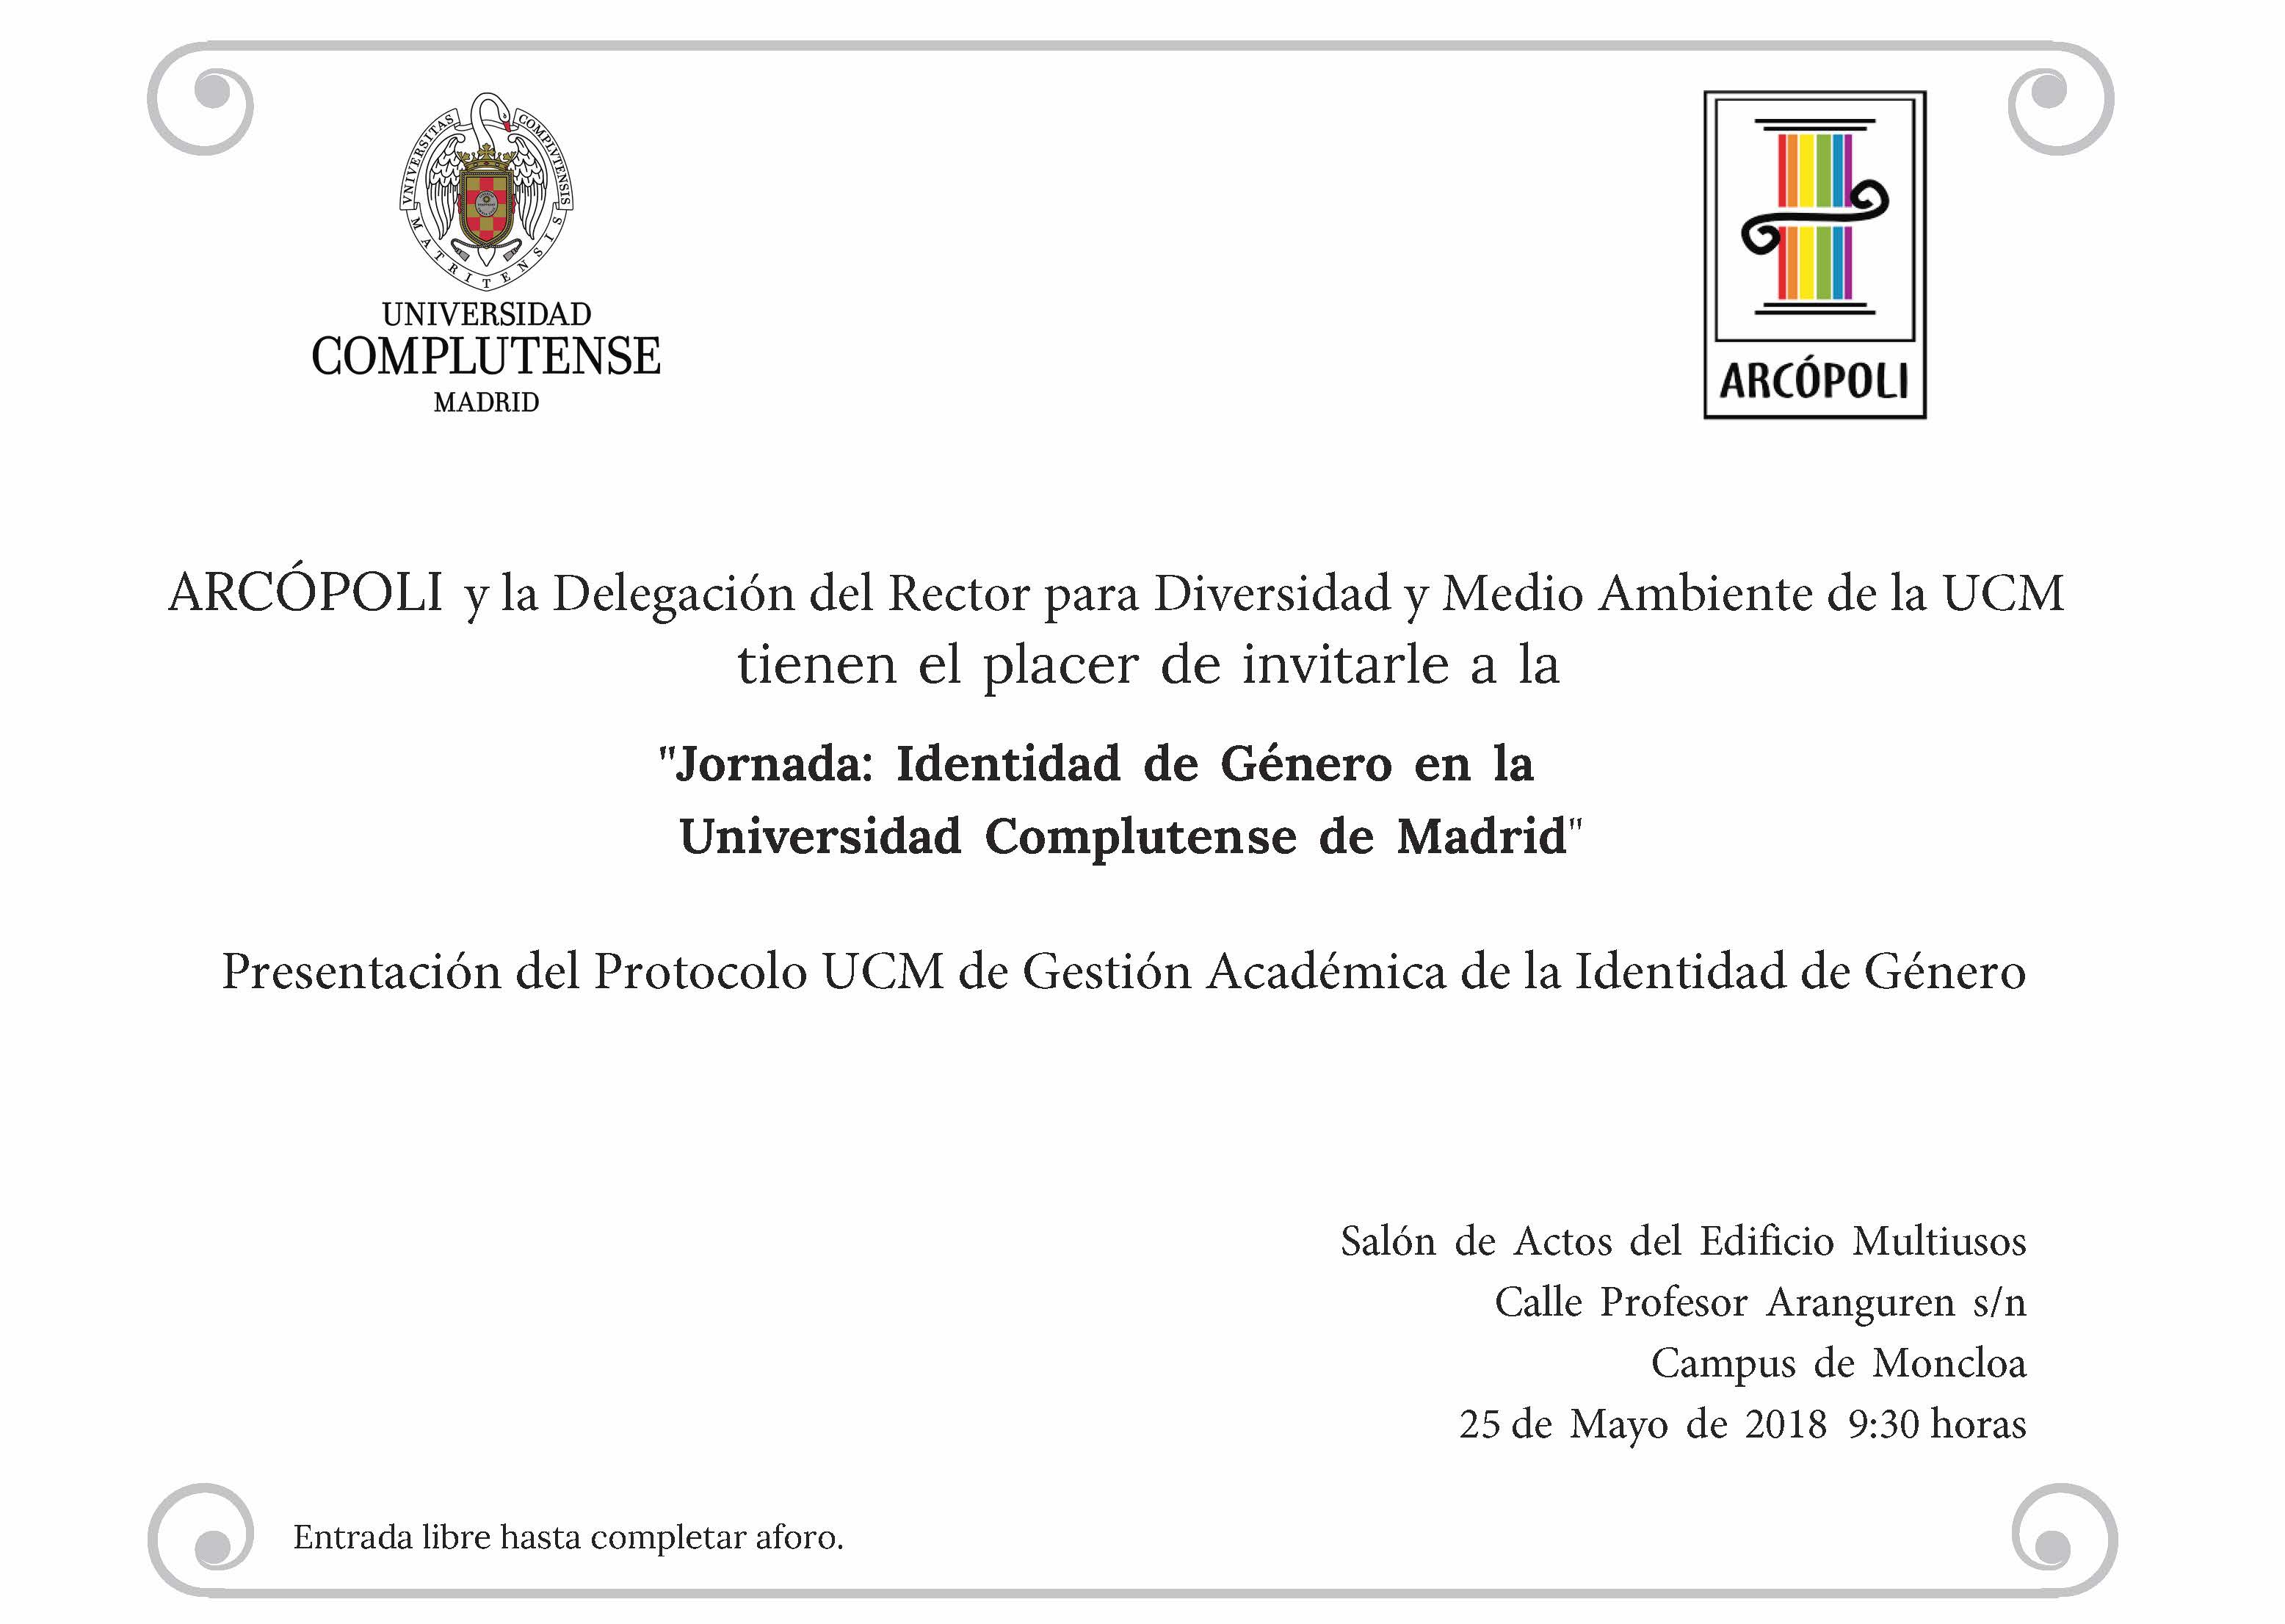 Jornada Identidad de Género en la Universidad Complutense de Madrid. Protocolo de Gestión Académica de la Identidad de Género